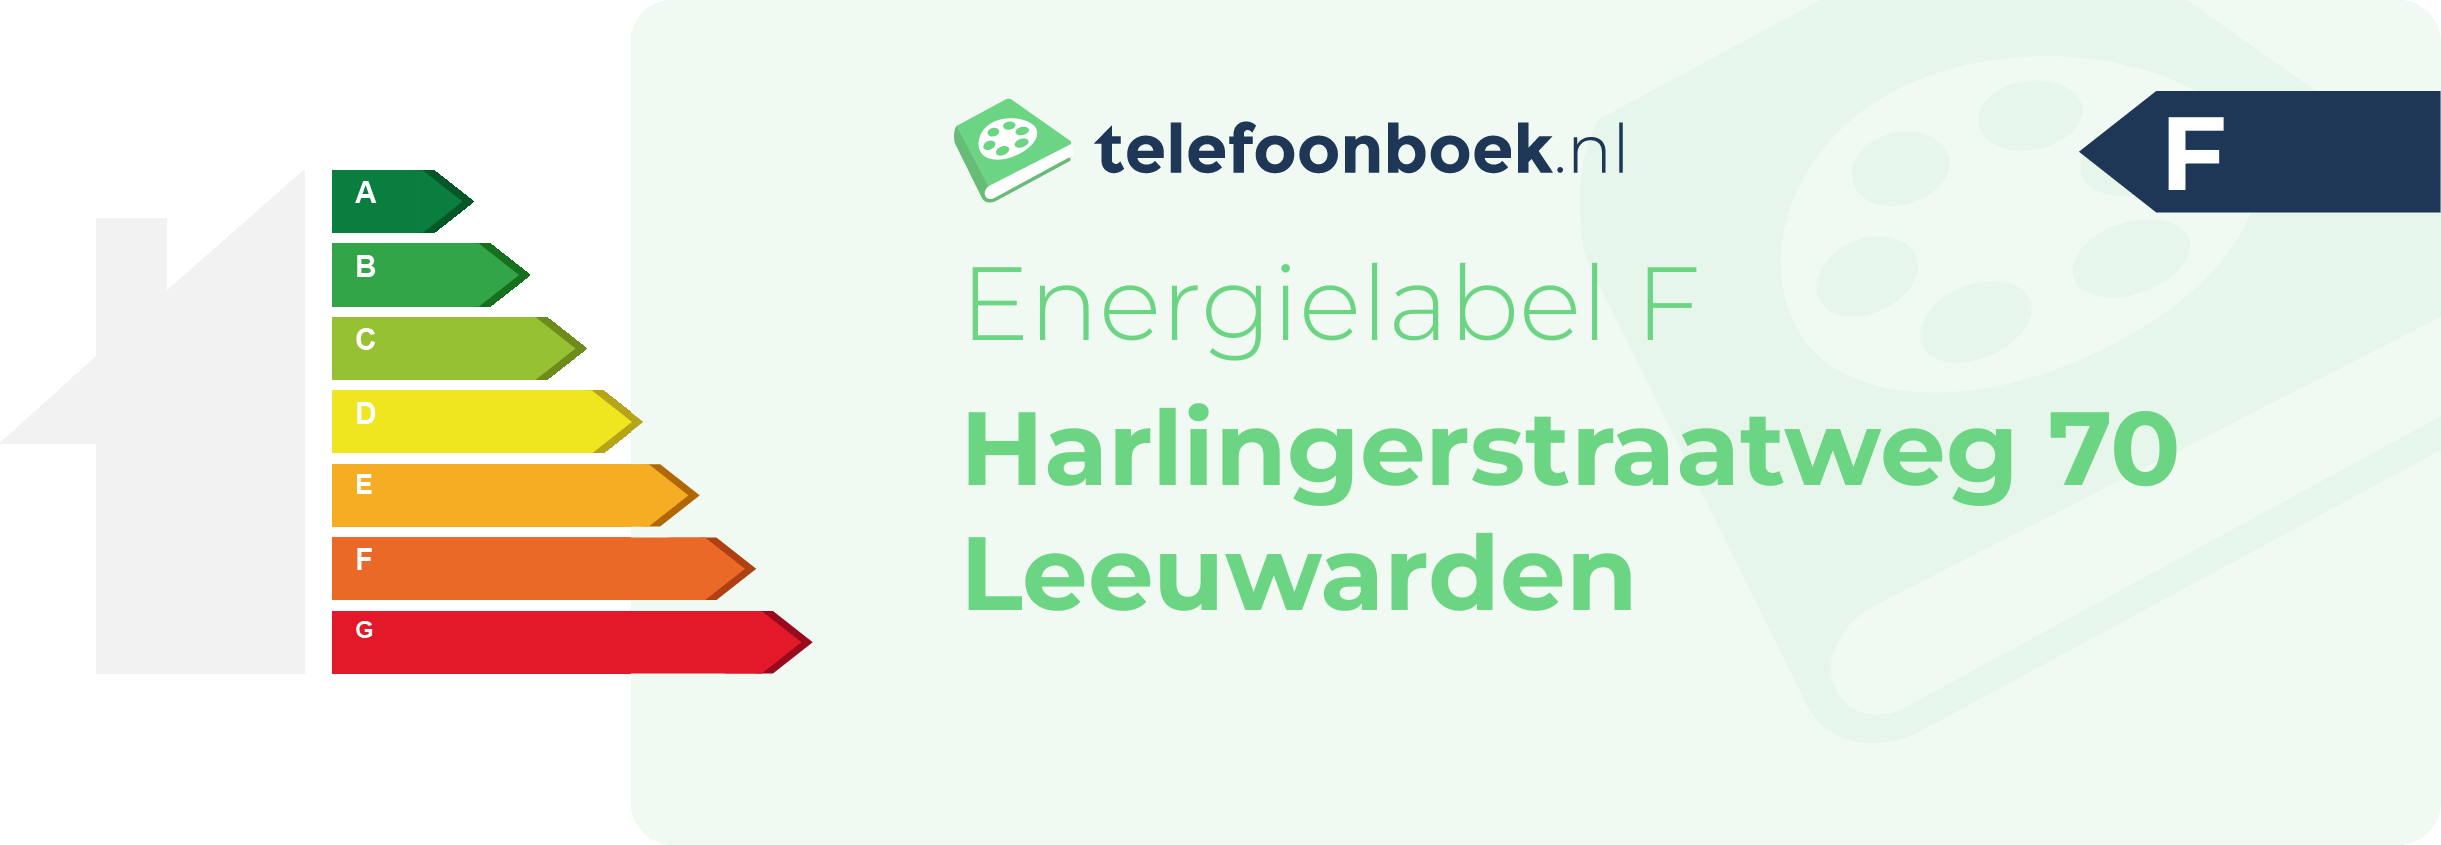 Energielabel Harlingerstraatweg 70 Leeuwarden